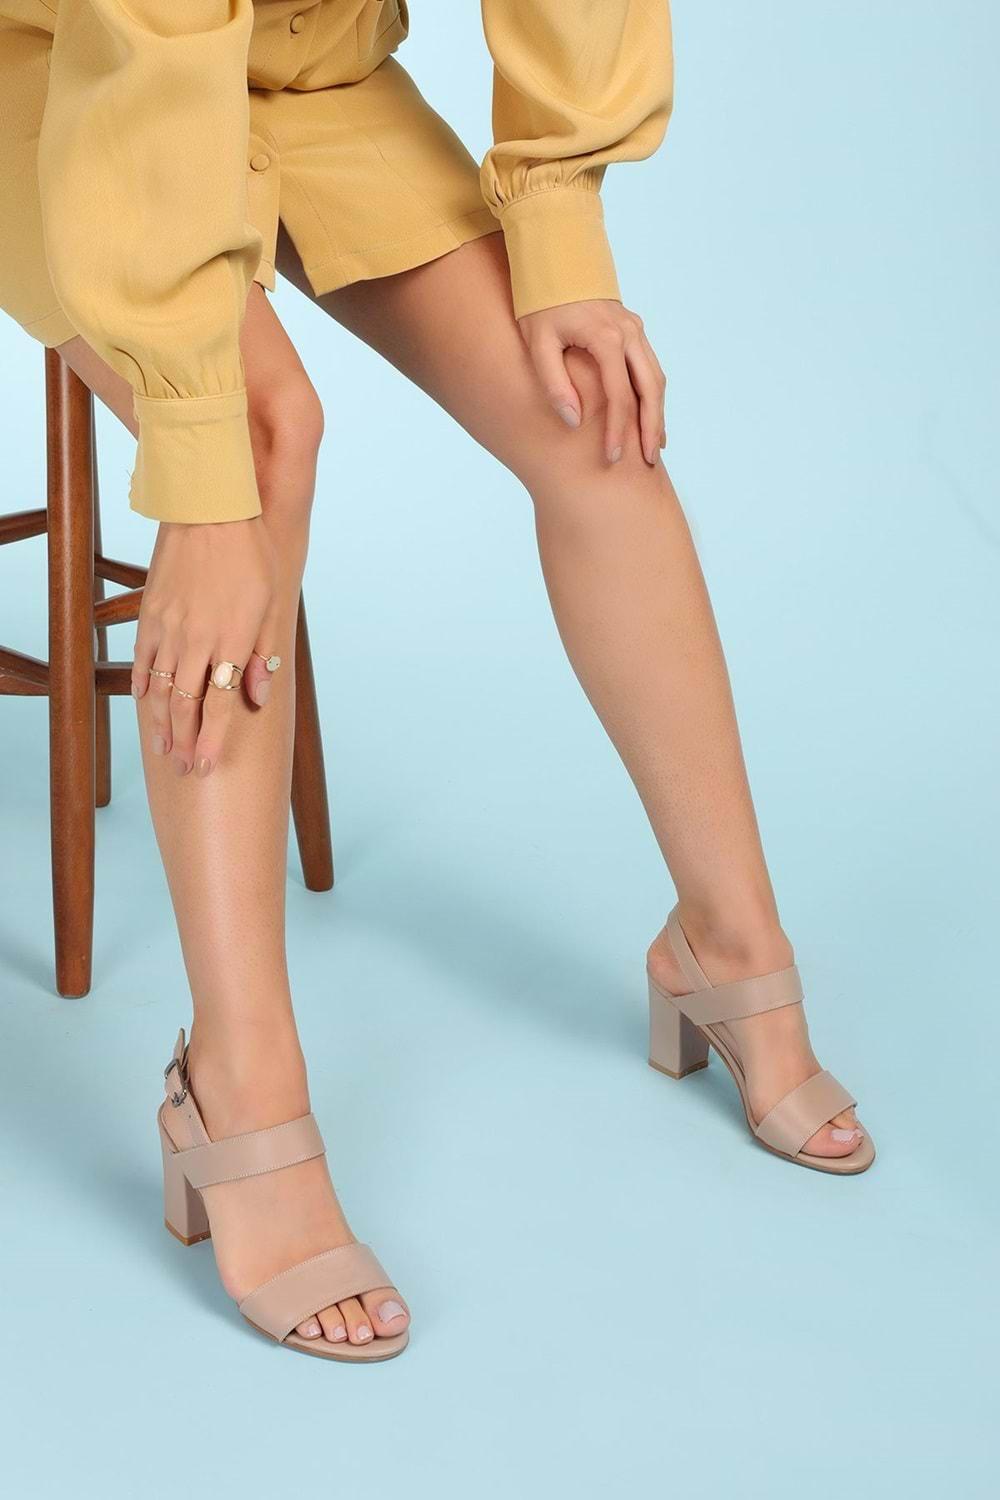 Gondol Kadın Hakiki Deri Klasik Günlük Rahat Topuklu Ayakkabı şhn.48 - Vizon - 36